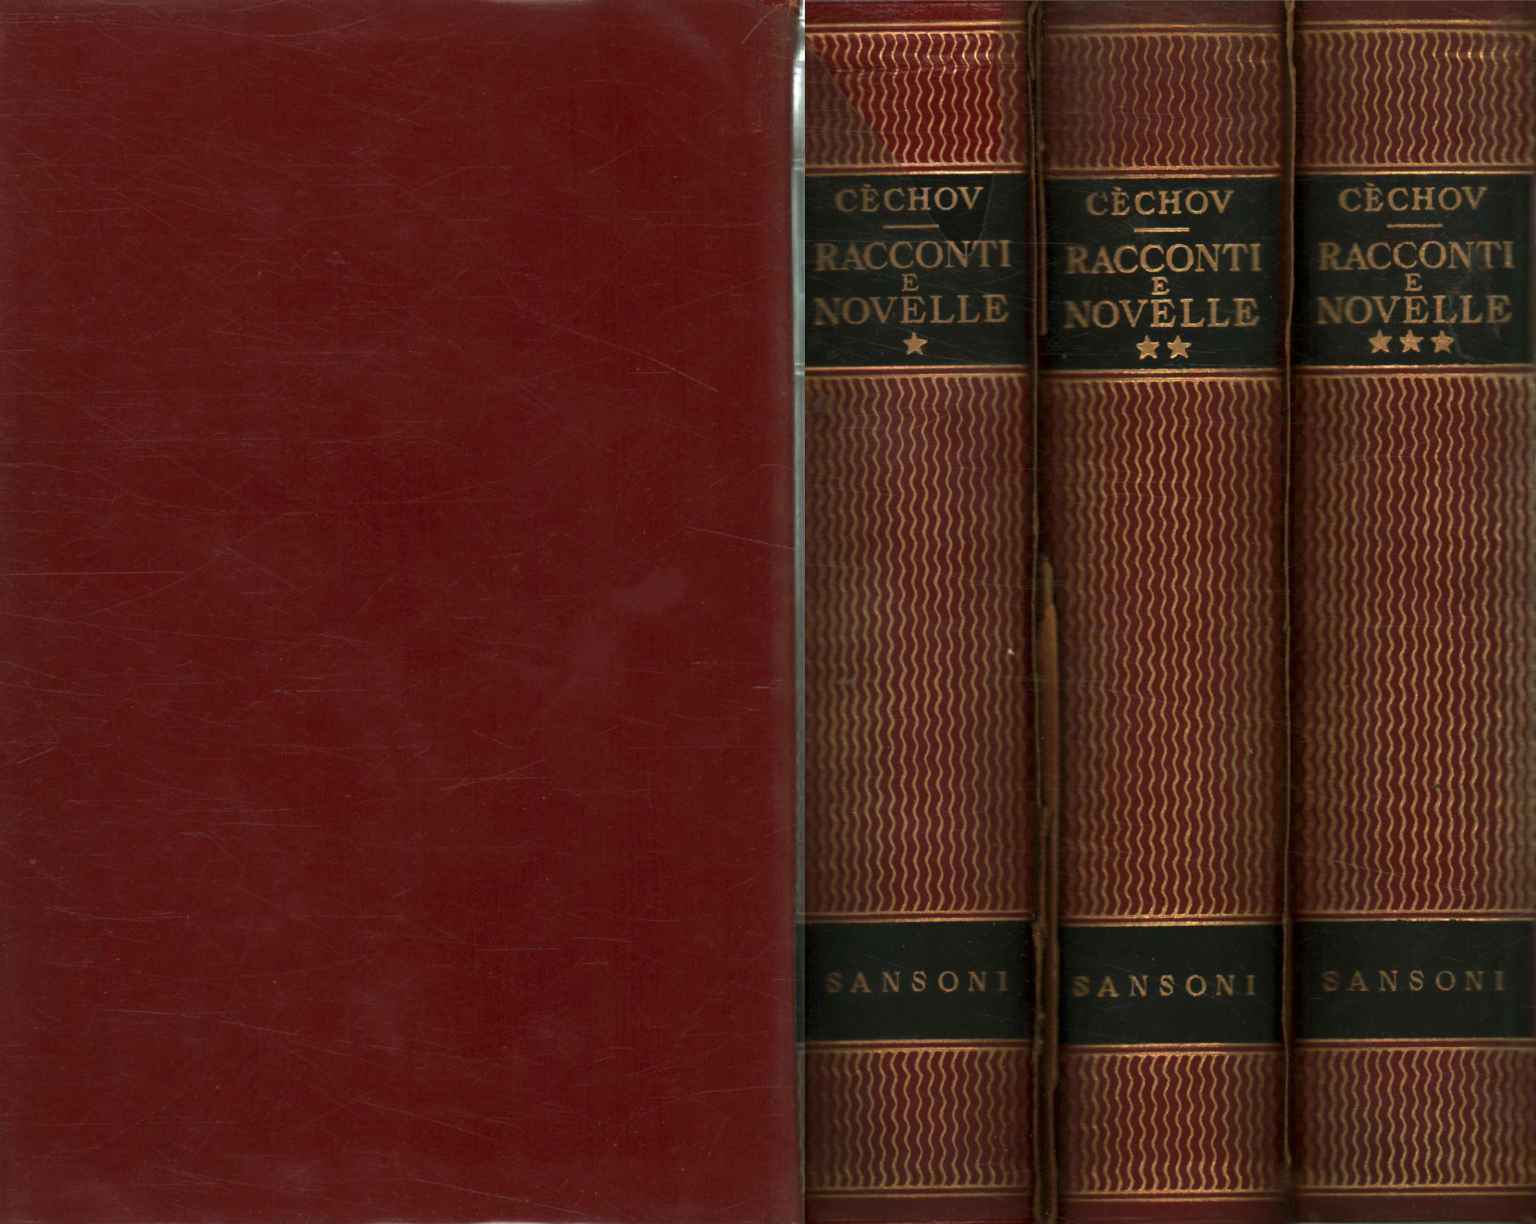 Contes et nouvelles (3 volumes)